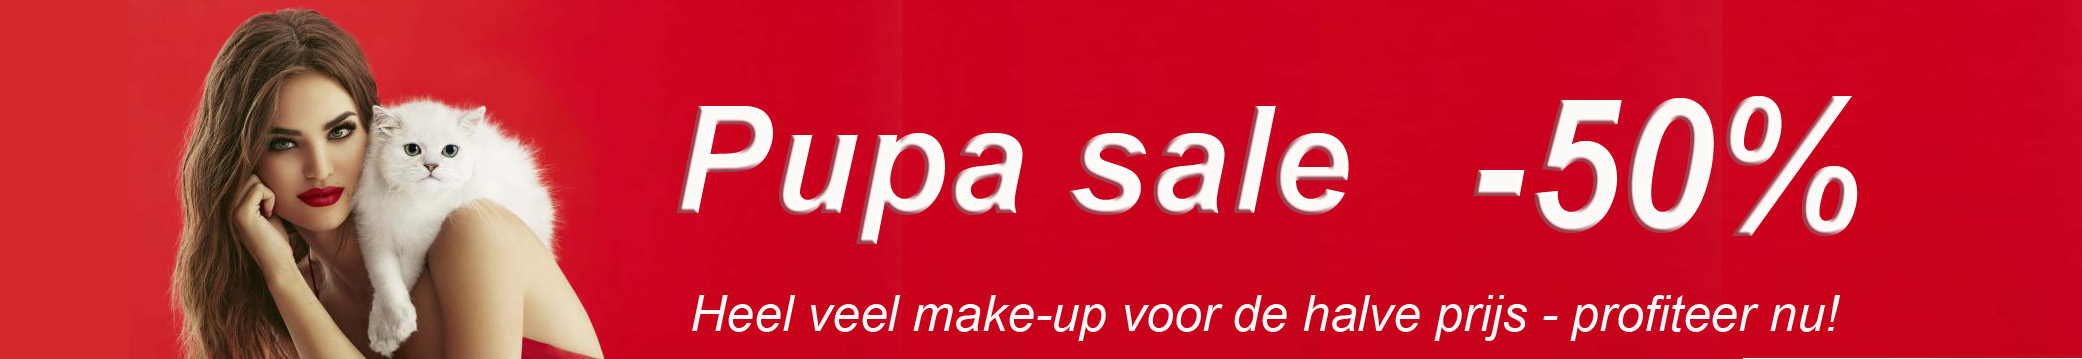 Pupa Sale halve prijs -50% korting